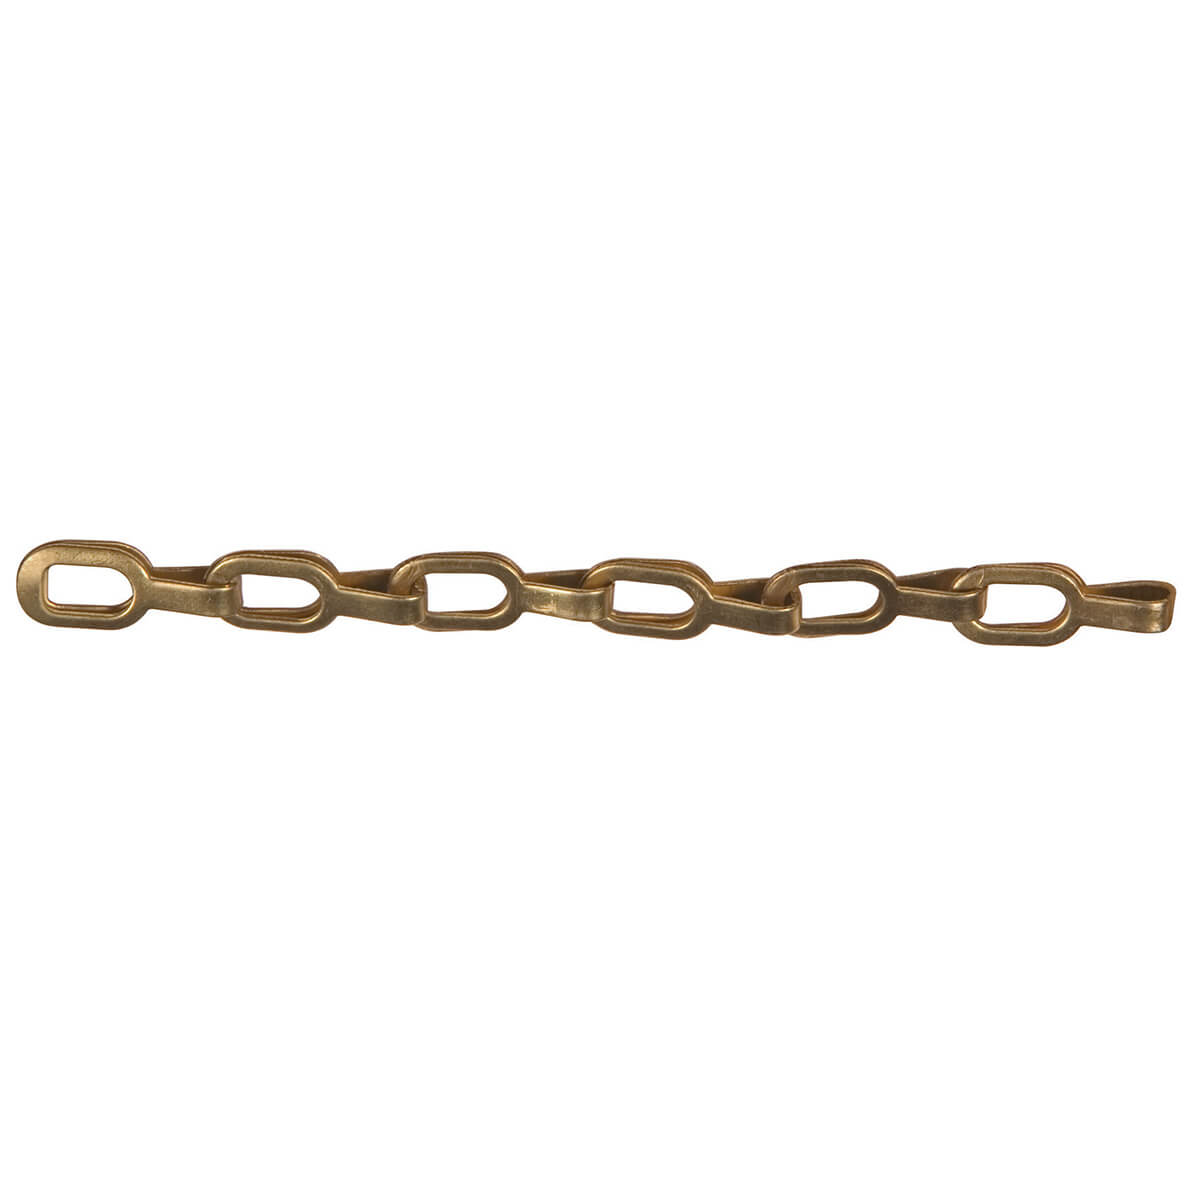 Safety Chain - Brass